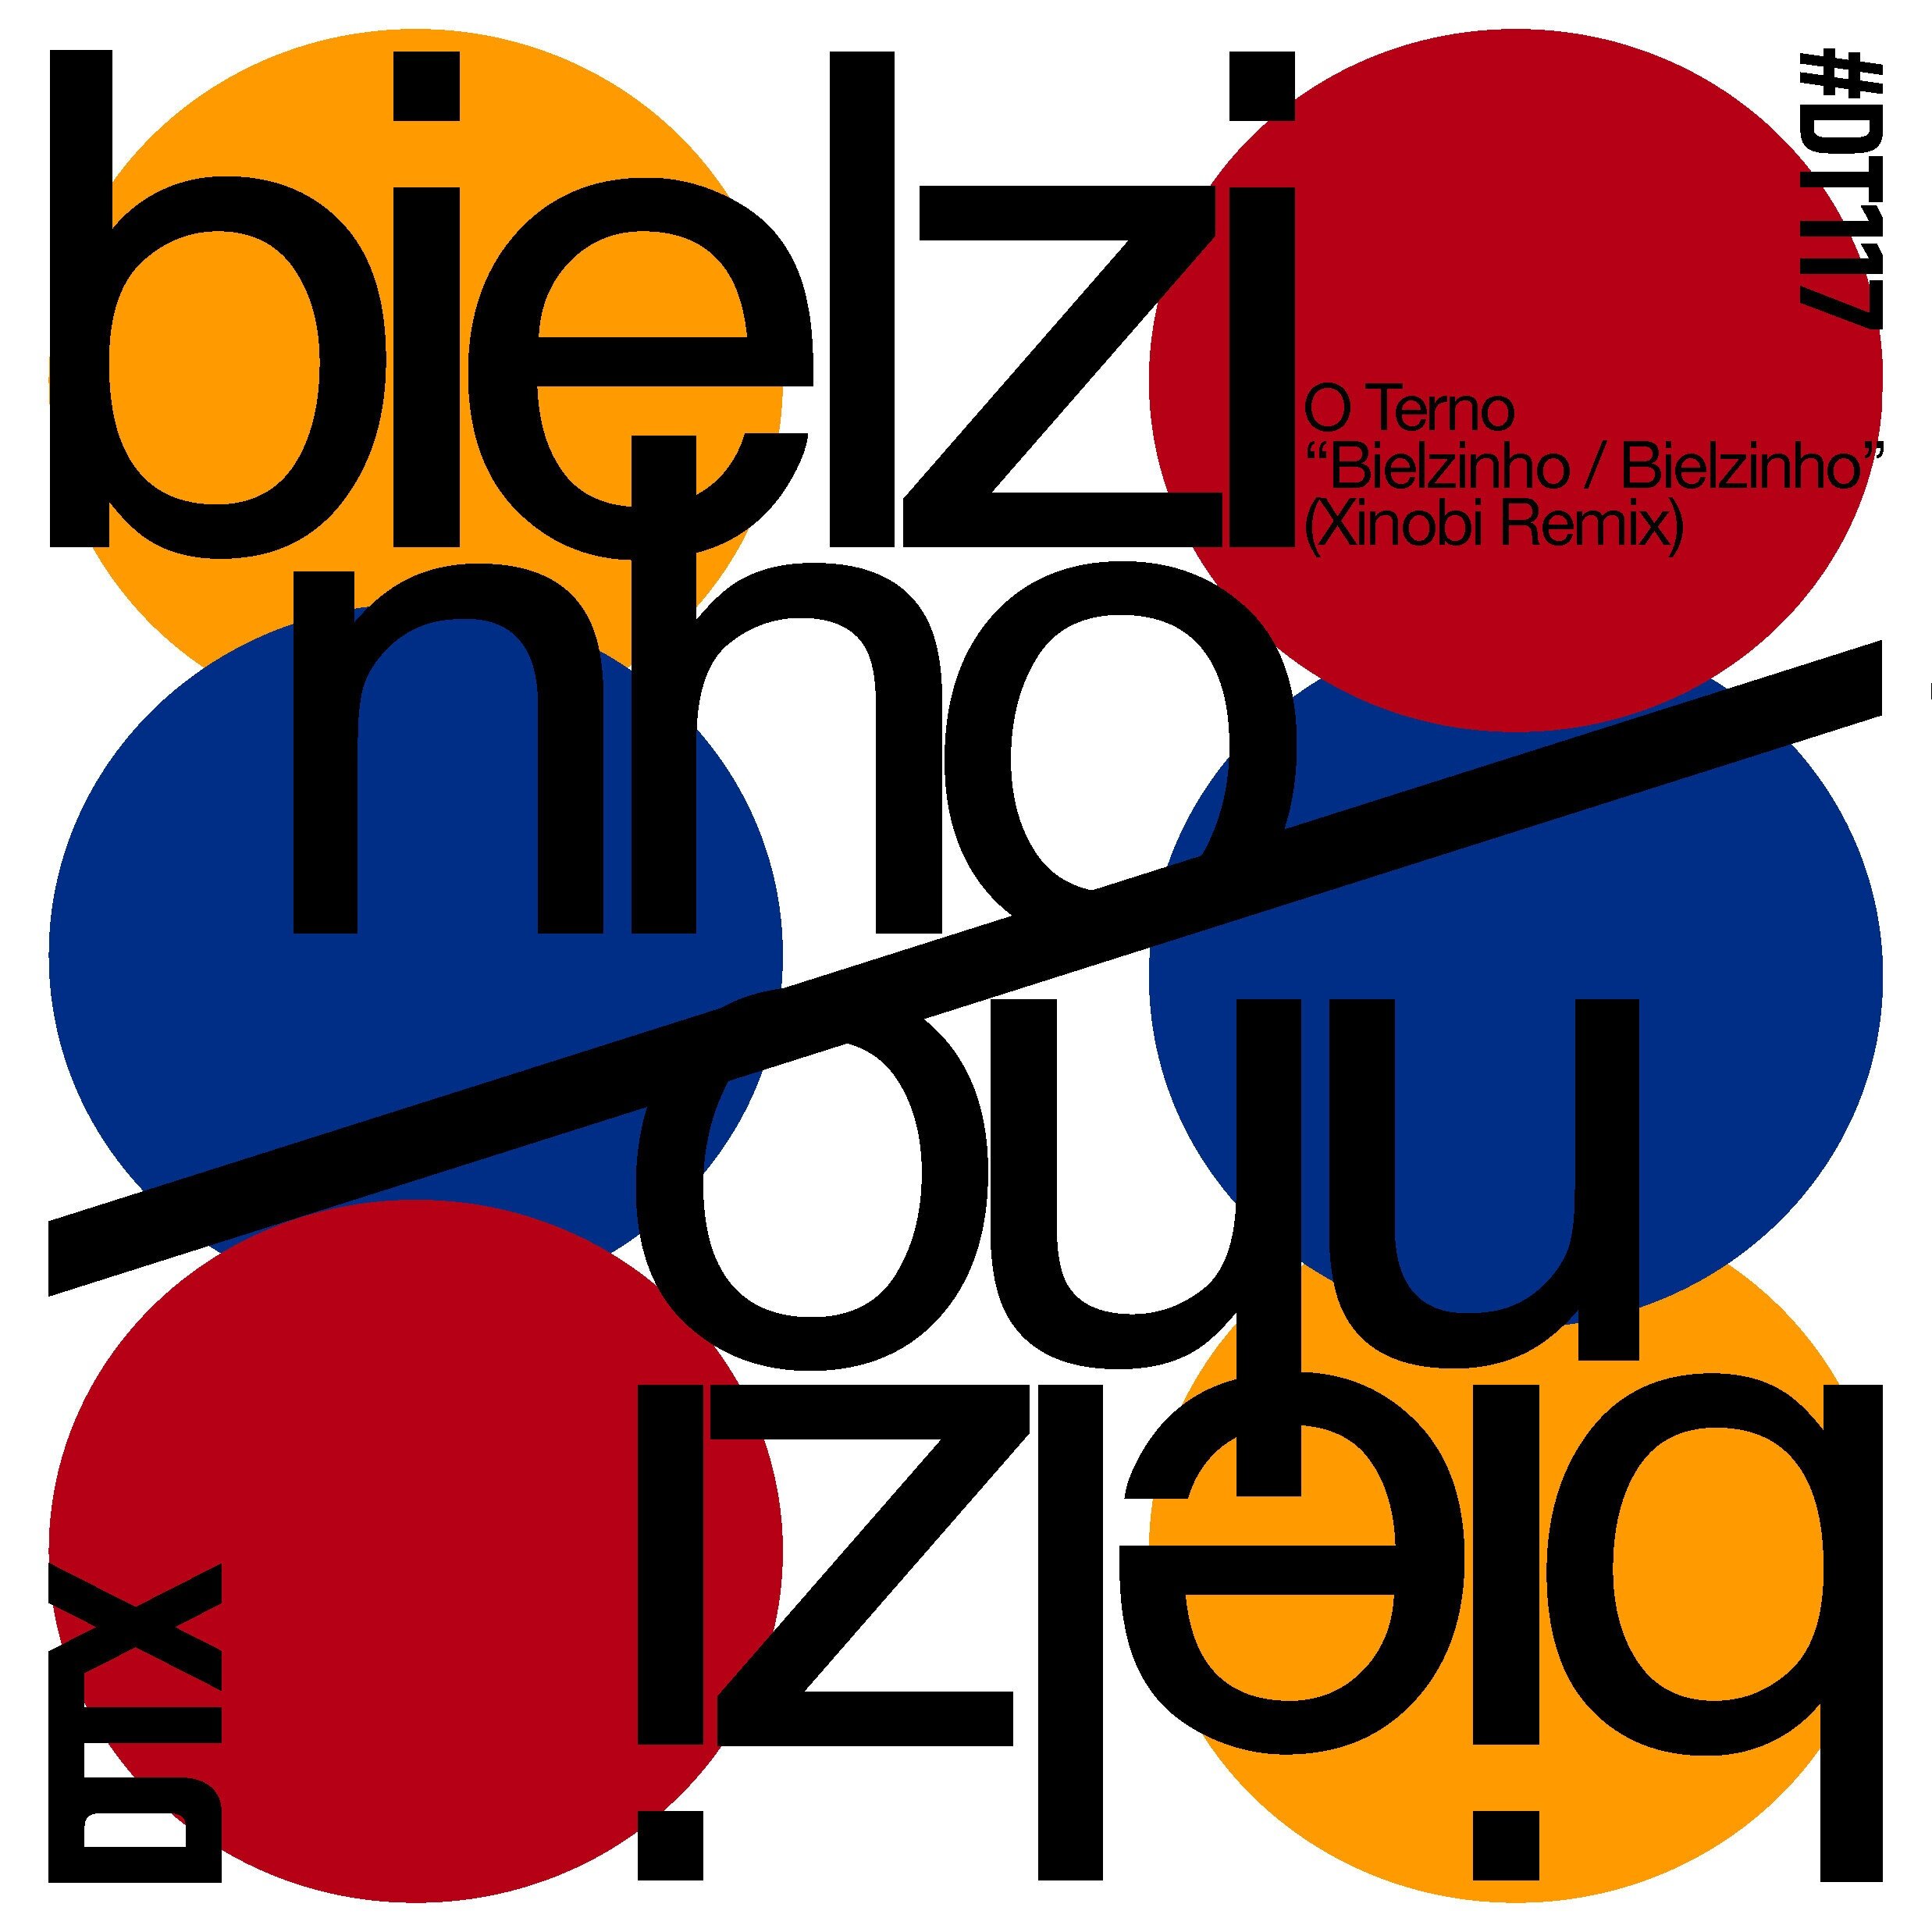 DT117: O Terno - Bielzinho / Bielzinho (Xinobi Remix)